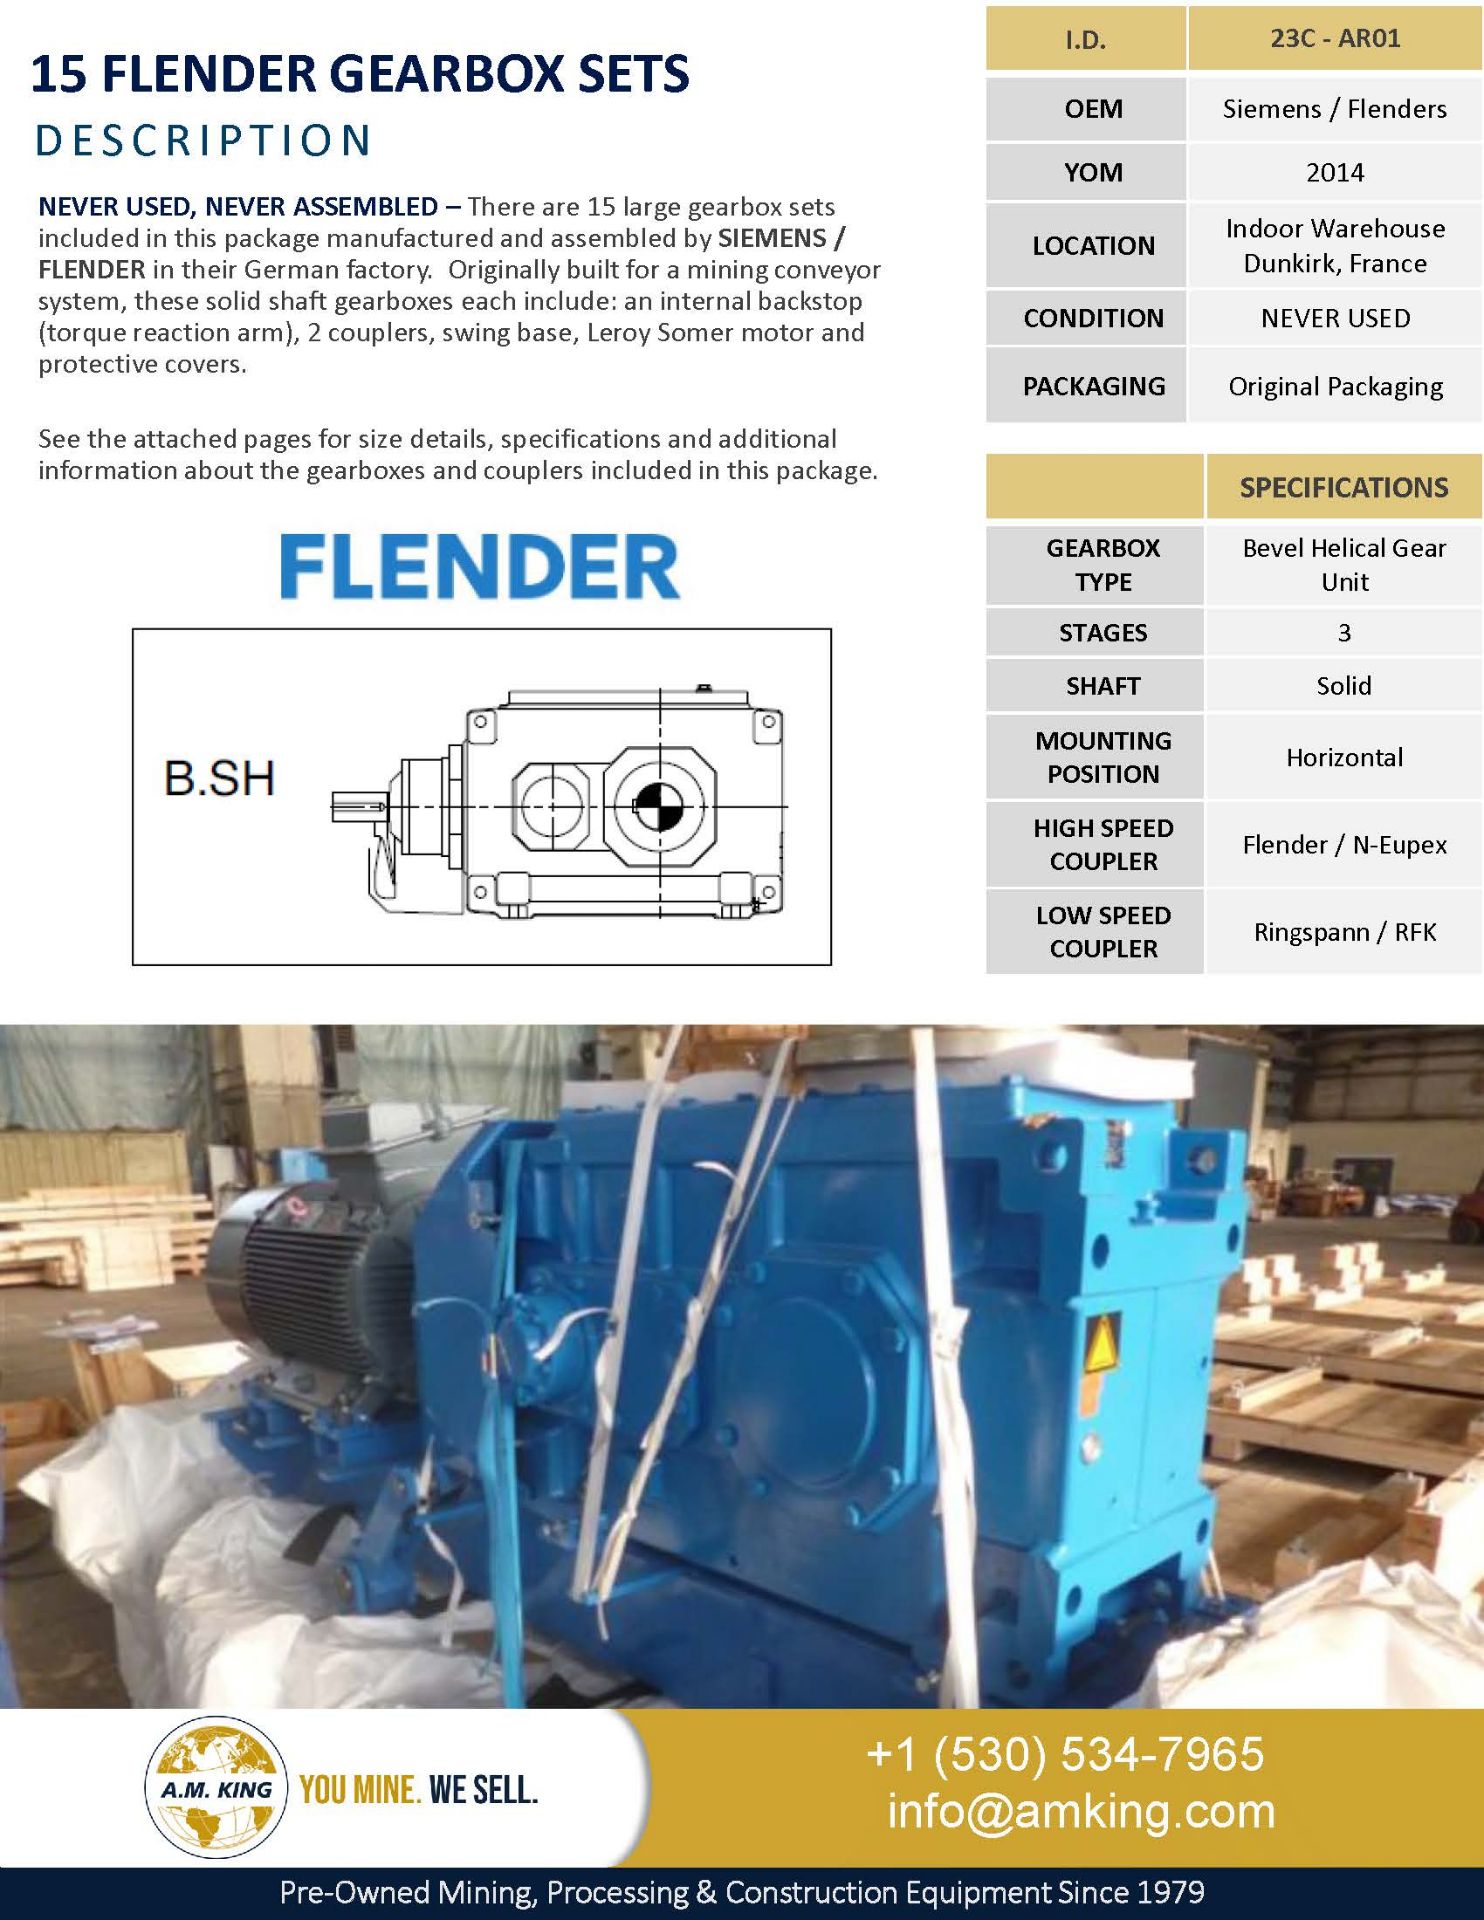 Siemens Flender Gearbox Package - Image 2 of 15